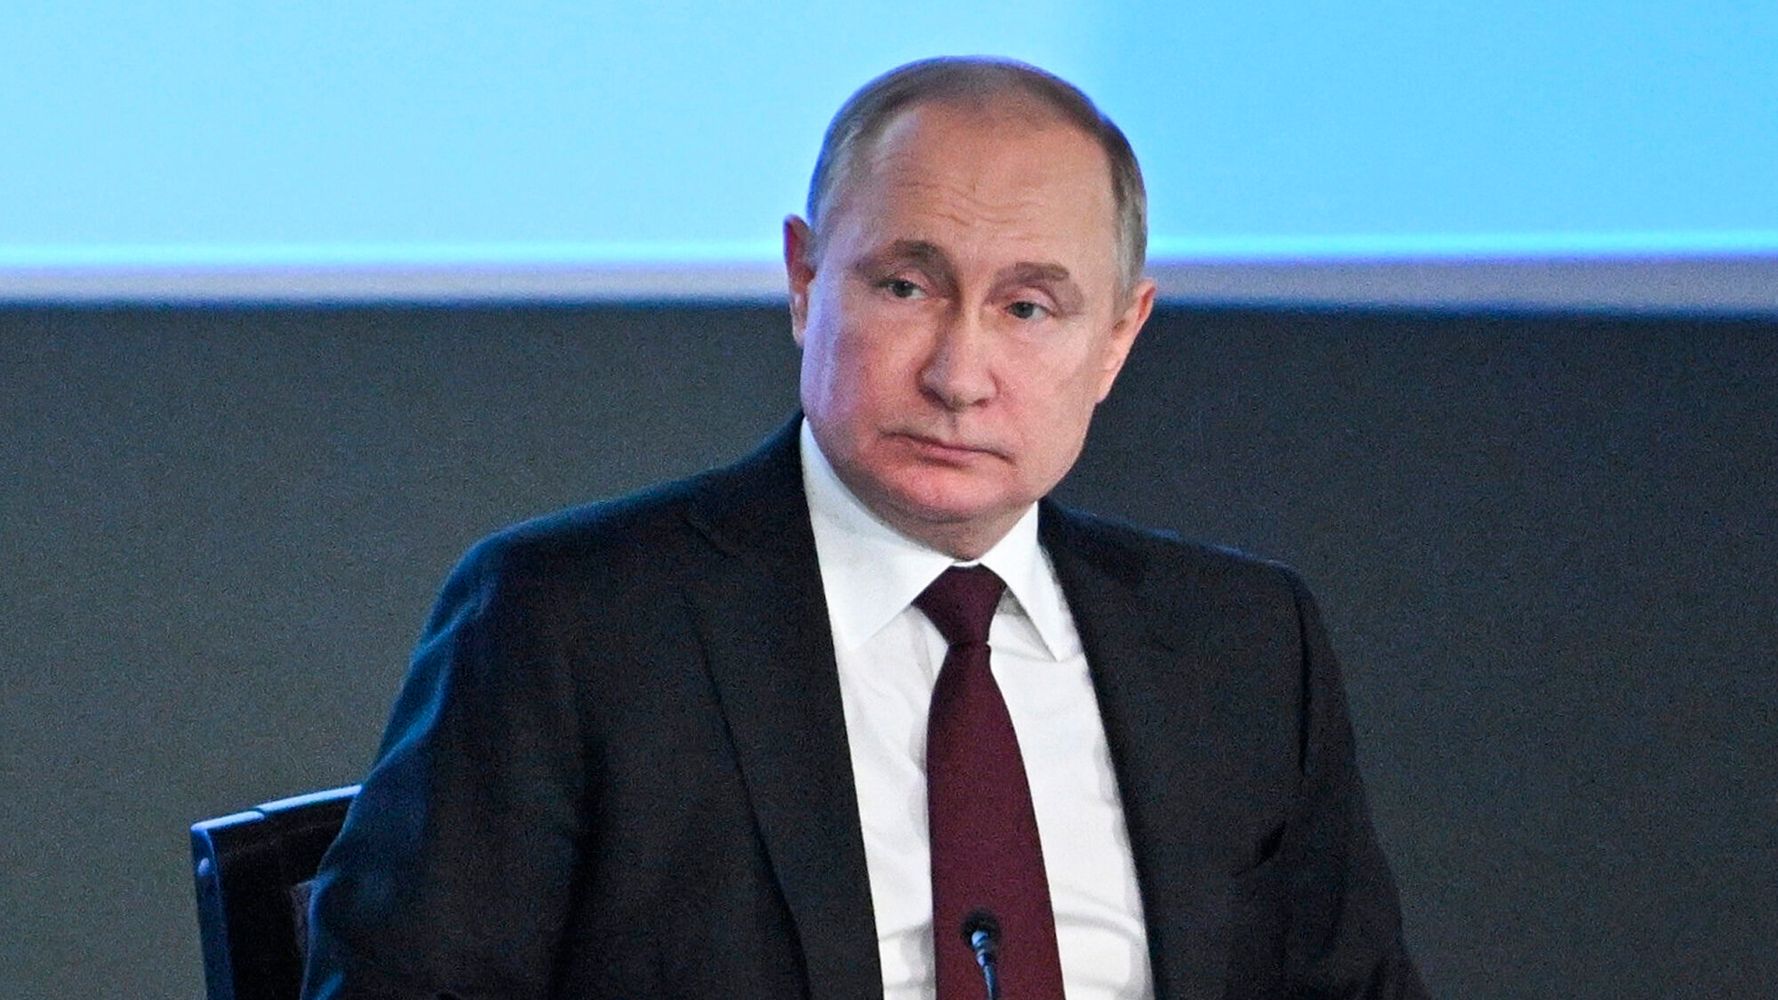 目的 ウクライナ プーチン プーチン氏が「目標修正」、ウクライナ東部で５月に勝利宣言か 米情報当局（stg-origin.aegpresents.com）